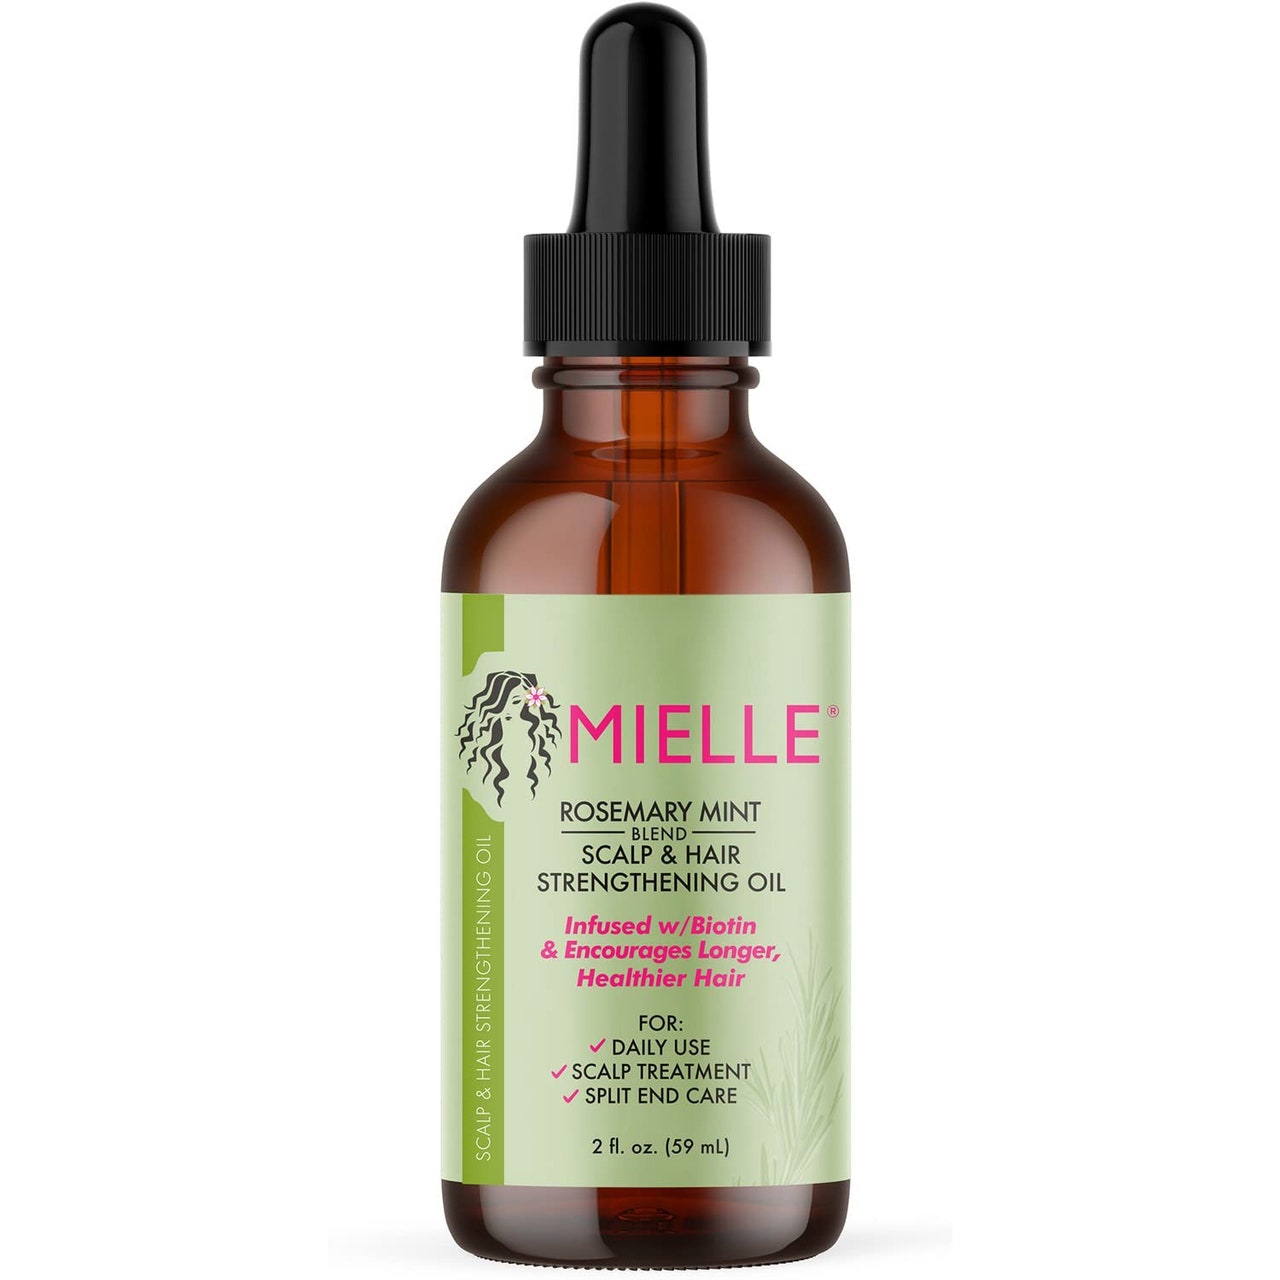 Mielle Organics Rosemary Mint Scalp & Hair Strengthening Oil, braune Serumflasche mit grünem Etikett auf weißem Hintergrund